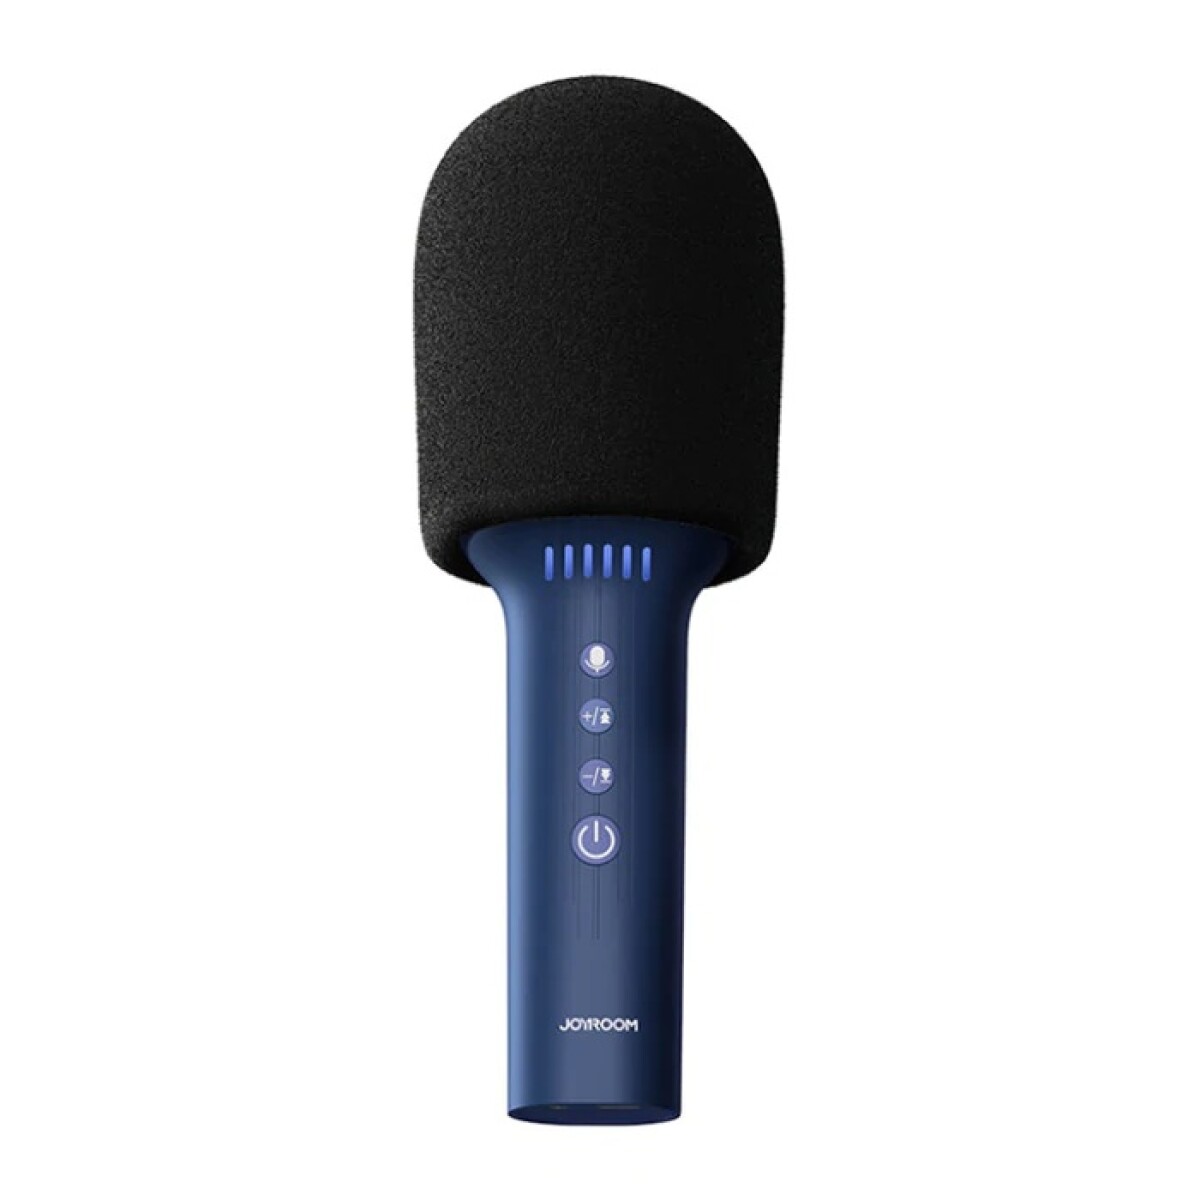 Micrófono Joyroom Bluetooth con Altavoz - AZUL 